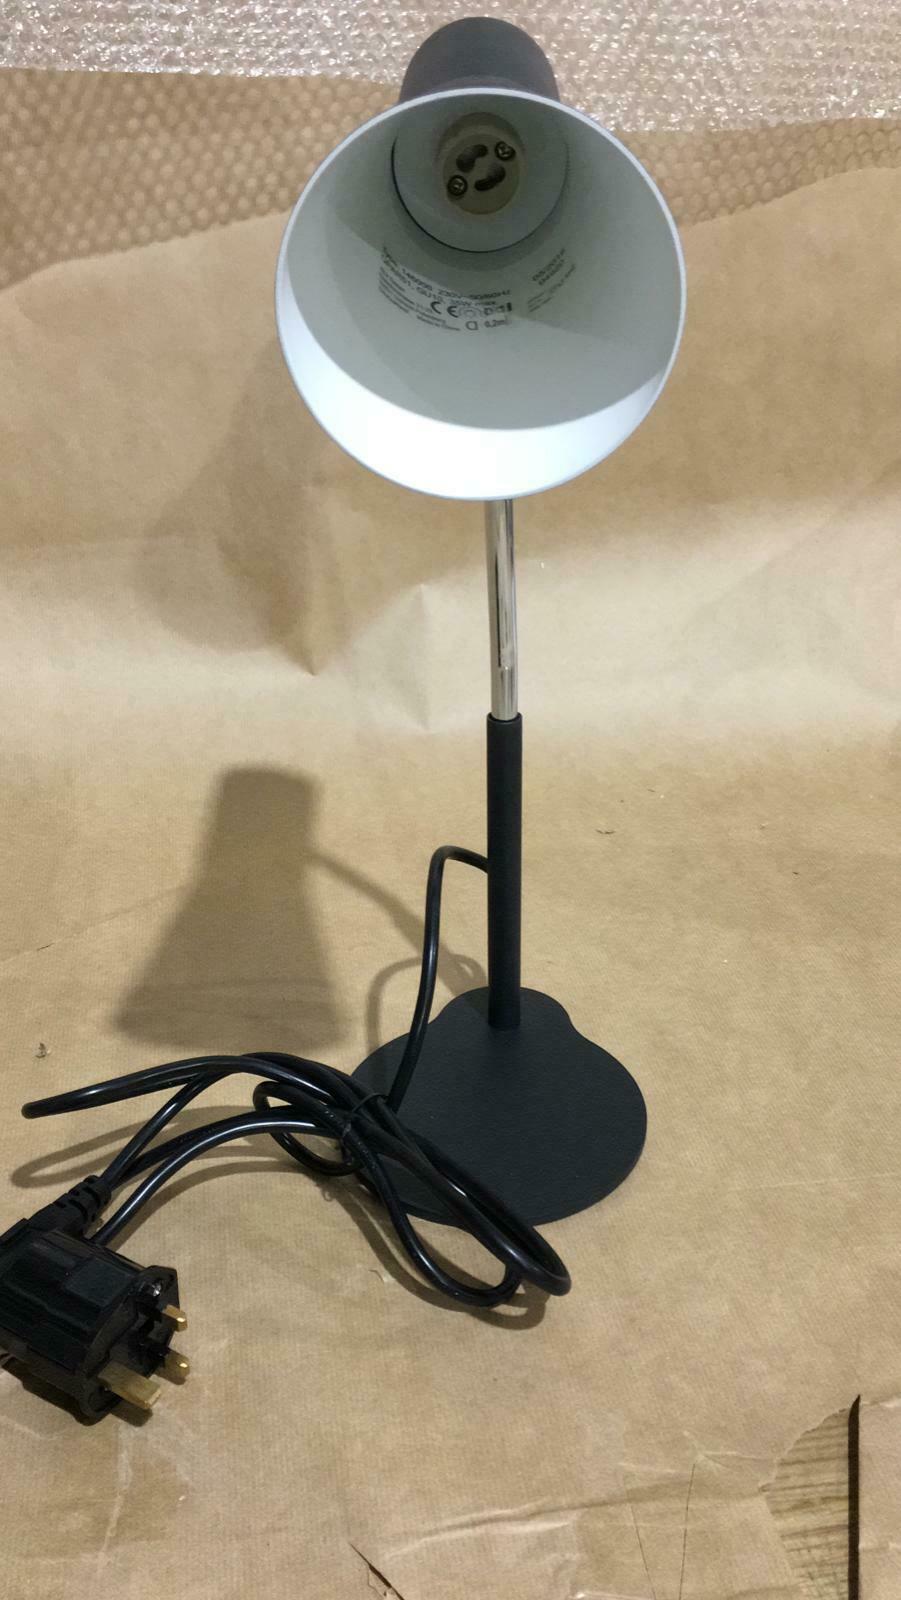 SLV LED Desk Lamp Phelia Table Lamp, LED Reading Lamp, dimmable, black, 3261 (Copy)